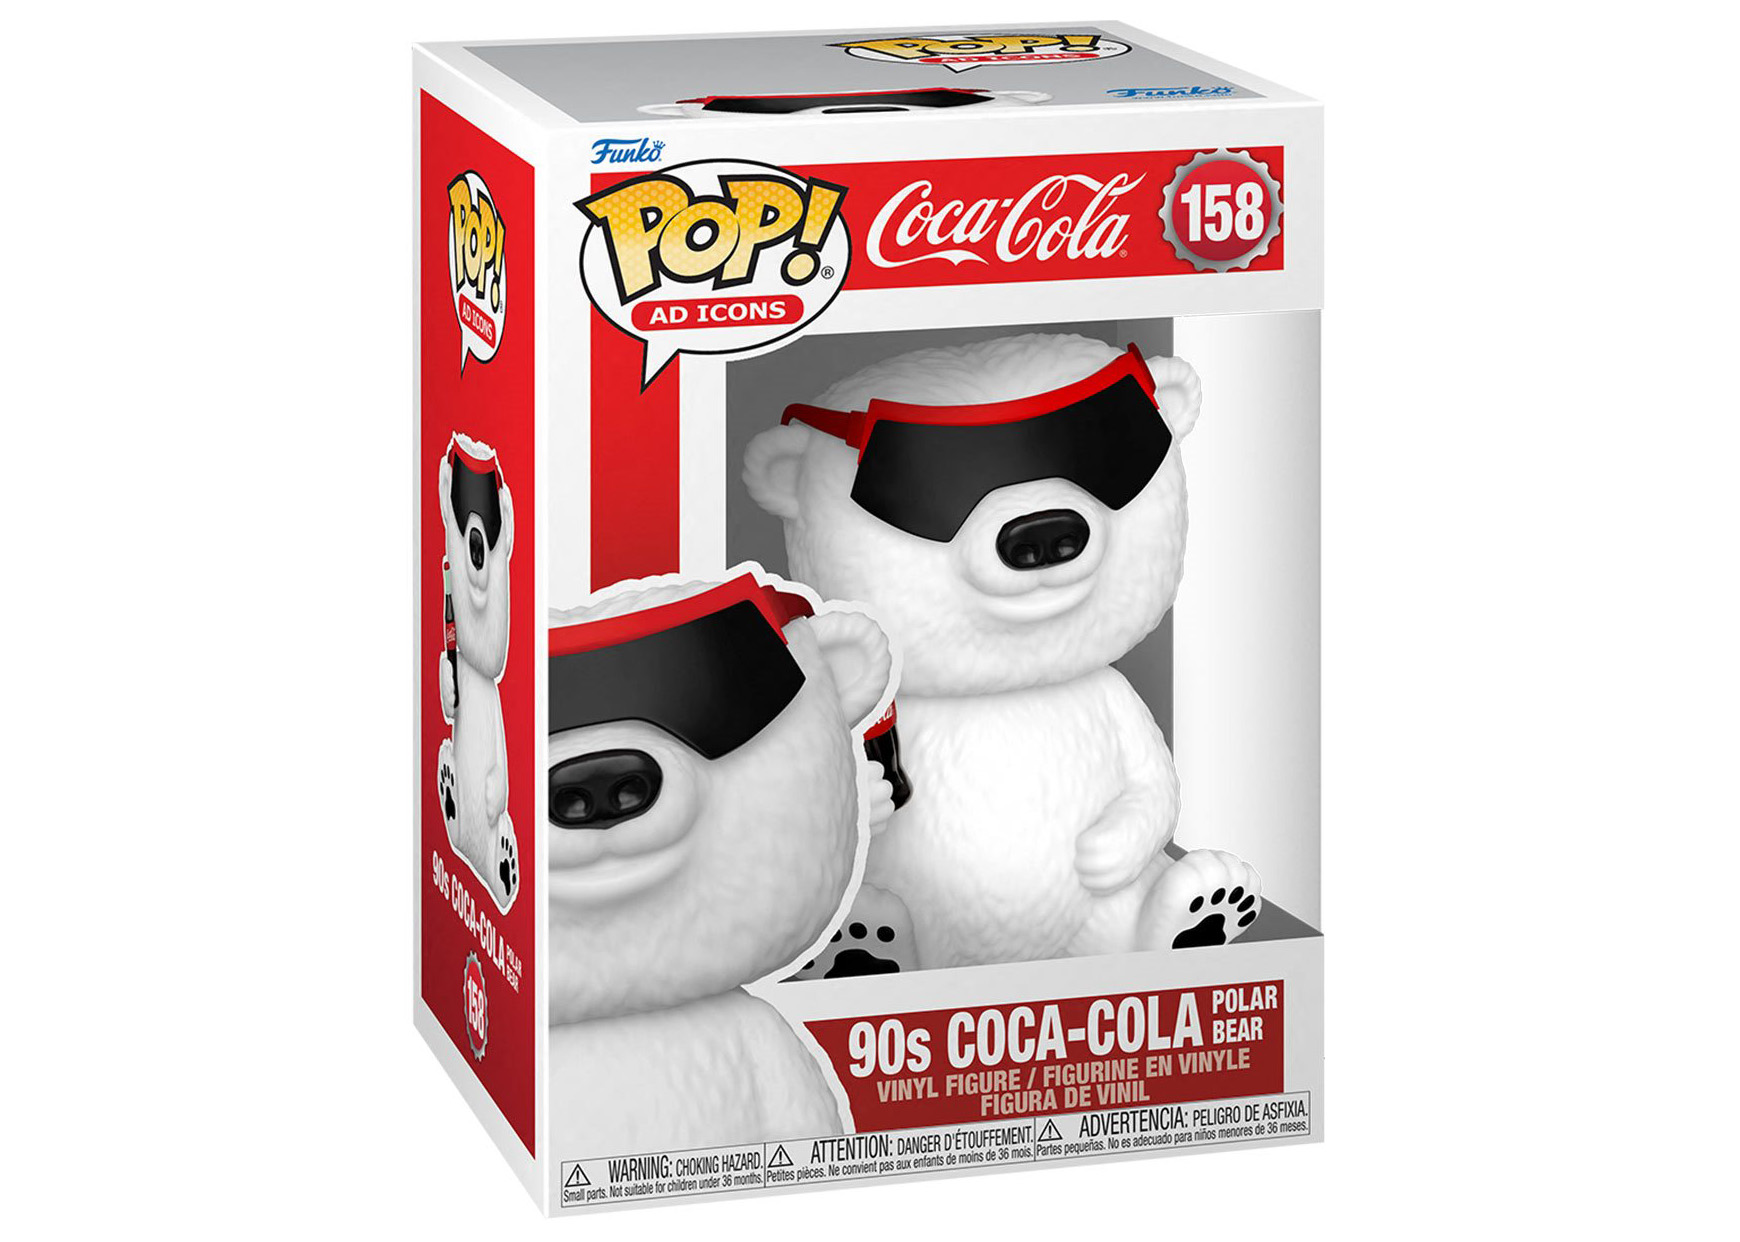 Funko Pop! Ad Icons Coca-Cola 90s Coca-Cola Polar Bear Figure #158 